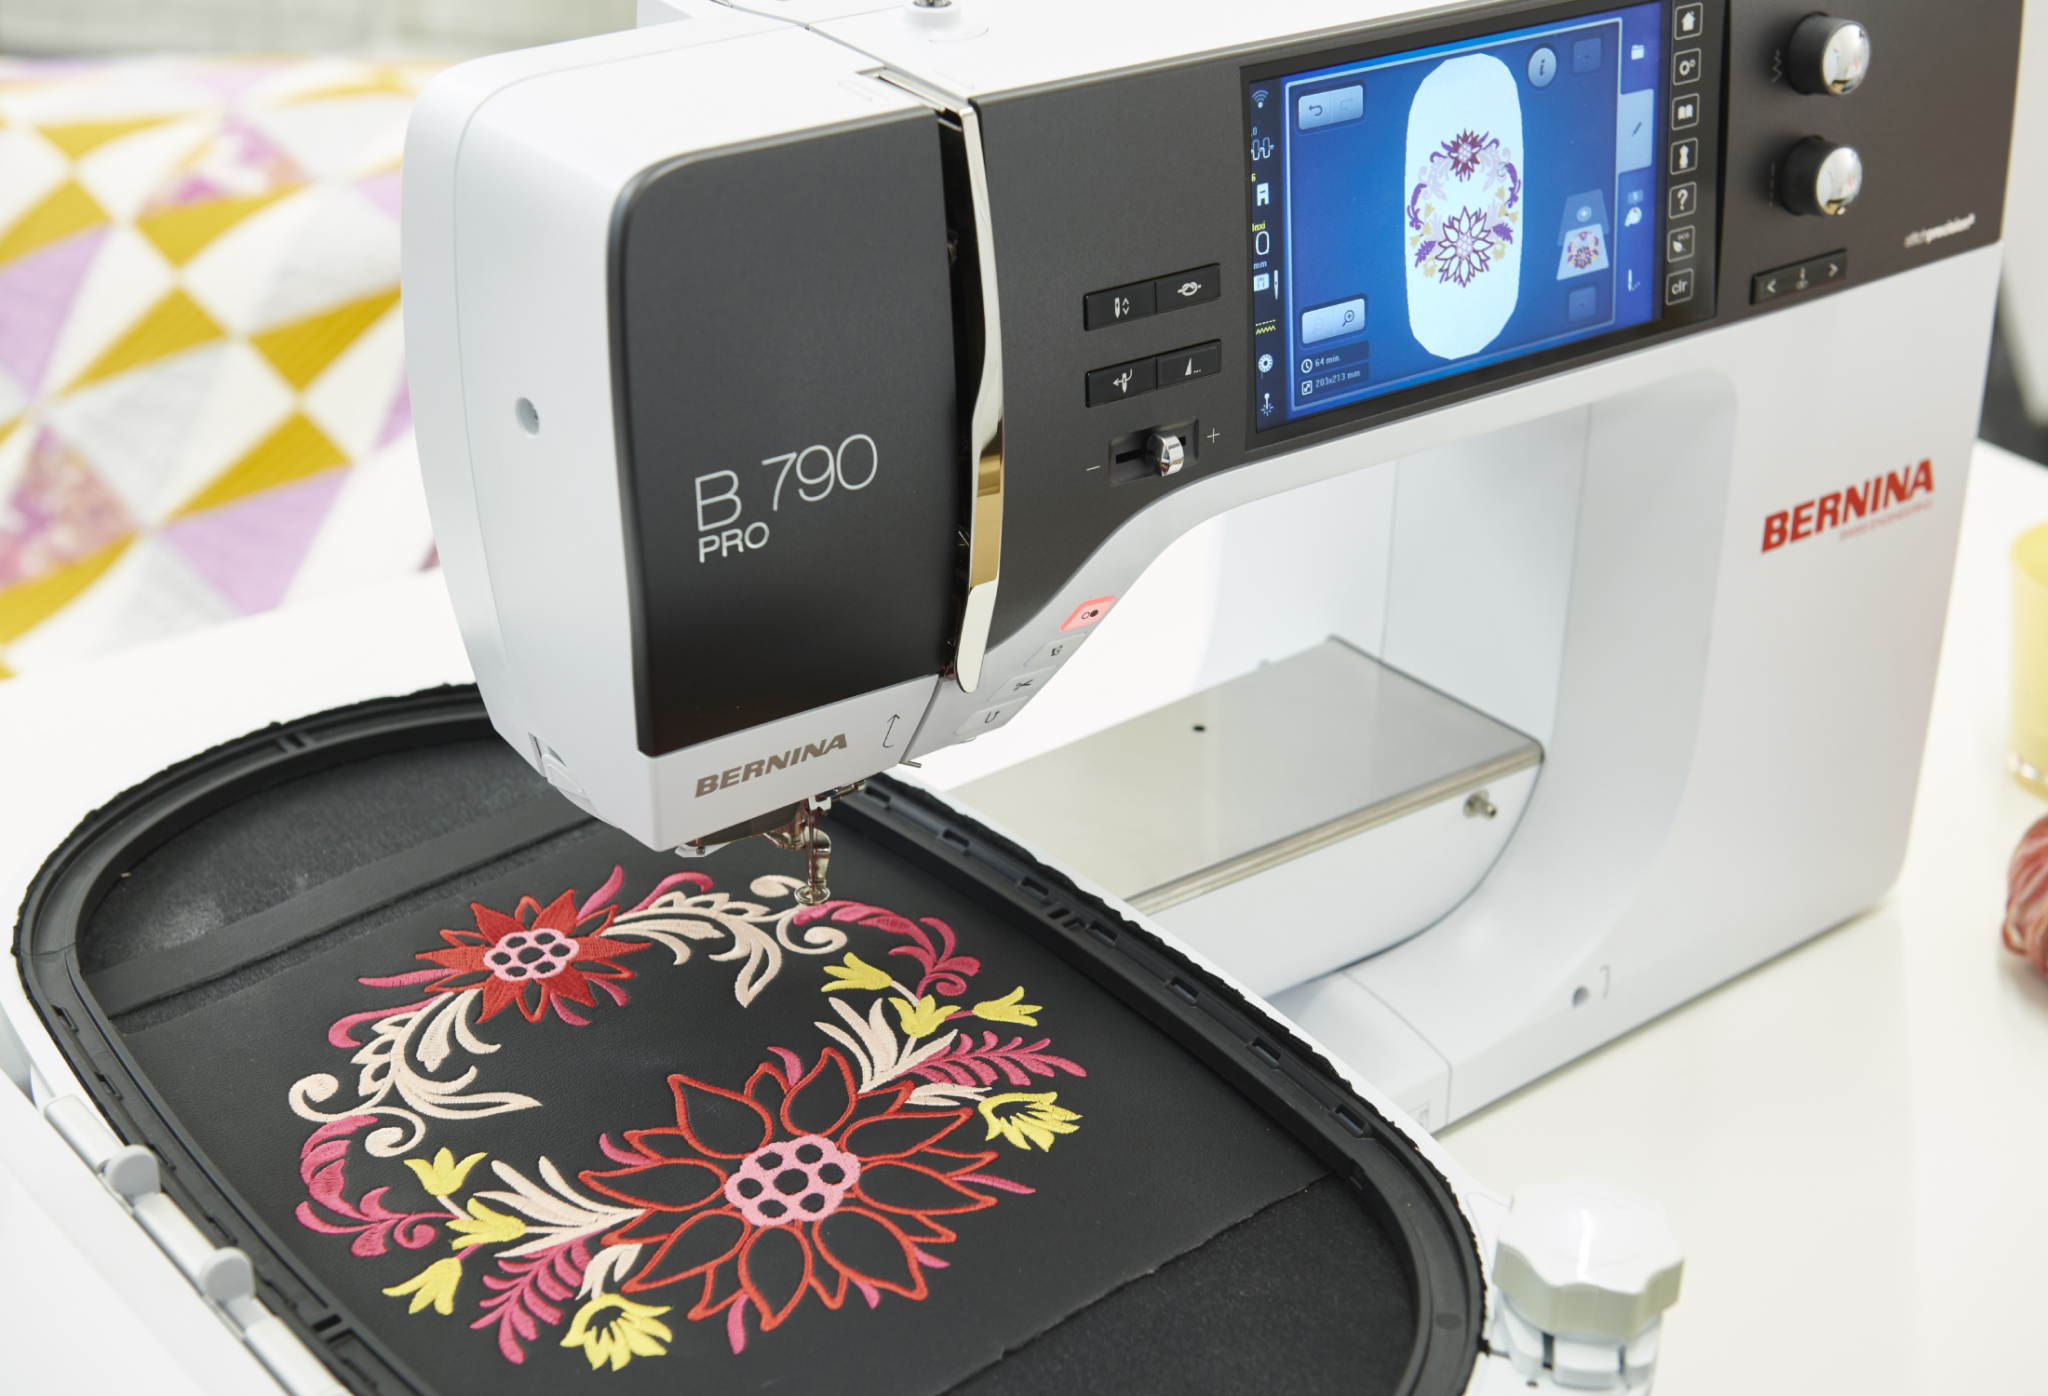 Bernina Bernina sewing and embroidery 790 Pro